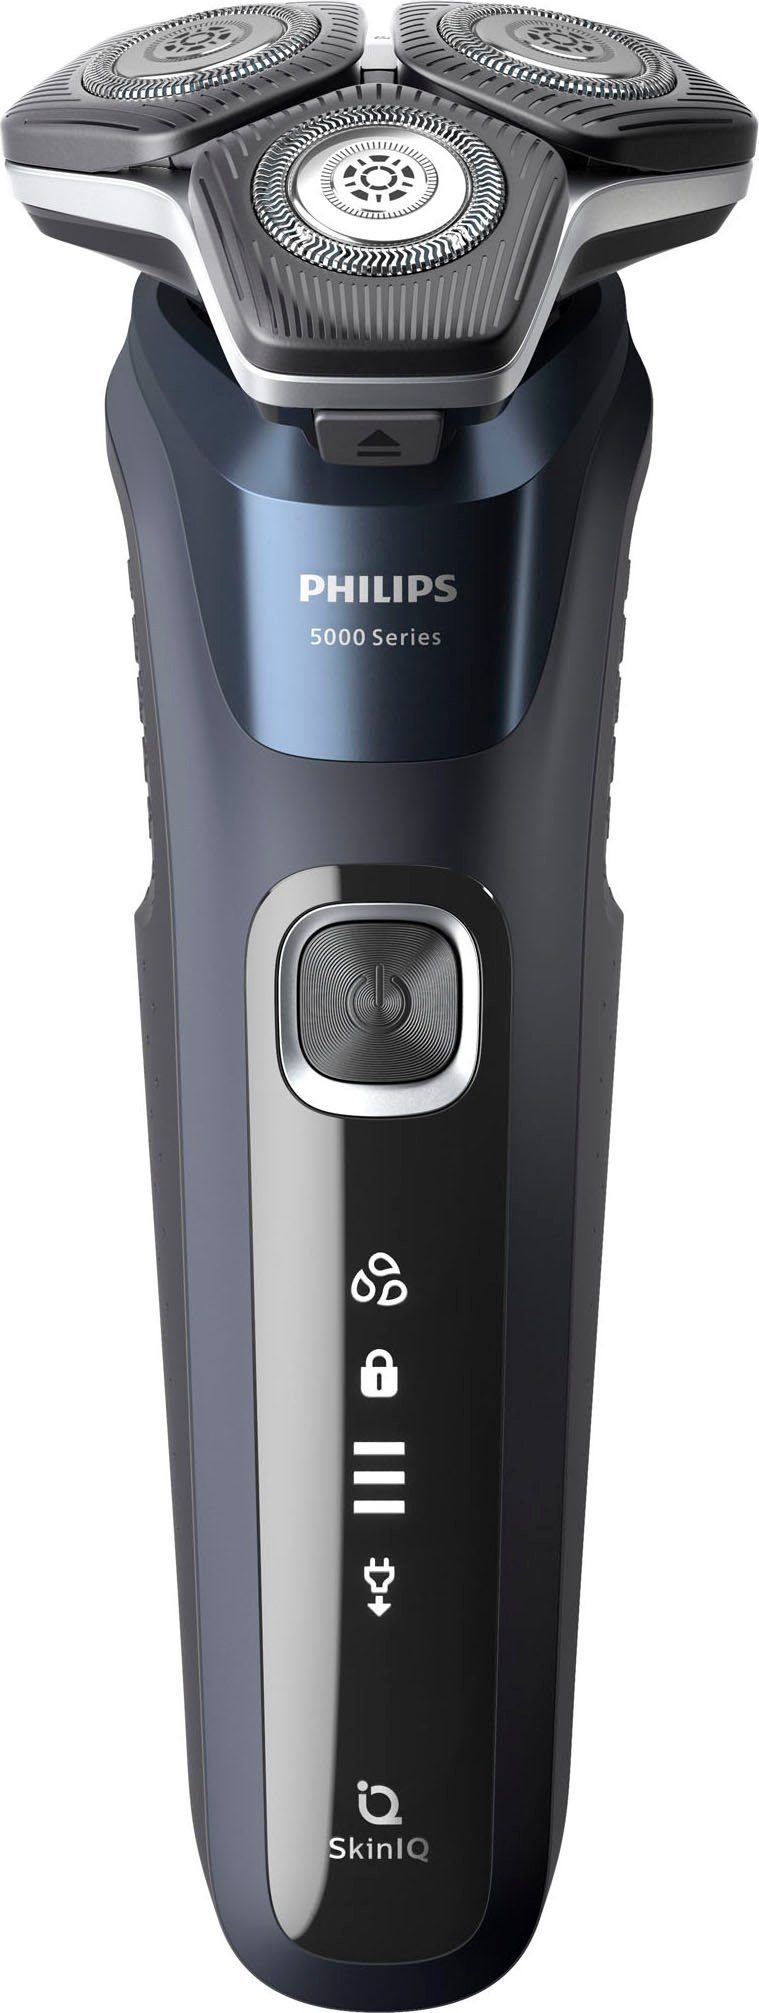 Philips Elektrorasierer Ihrem Etui, Series eine 5000 sich Präzisionstrimmer, für mühelose Technologie, Bart mit Rasur anpasst SkinIQ Shaver die Ladestand, S5885/35, SkinIQ Technologie, ausklappbarer